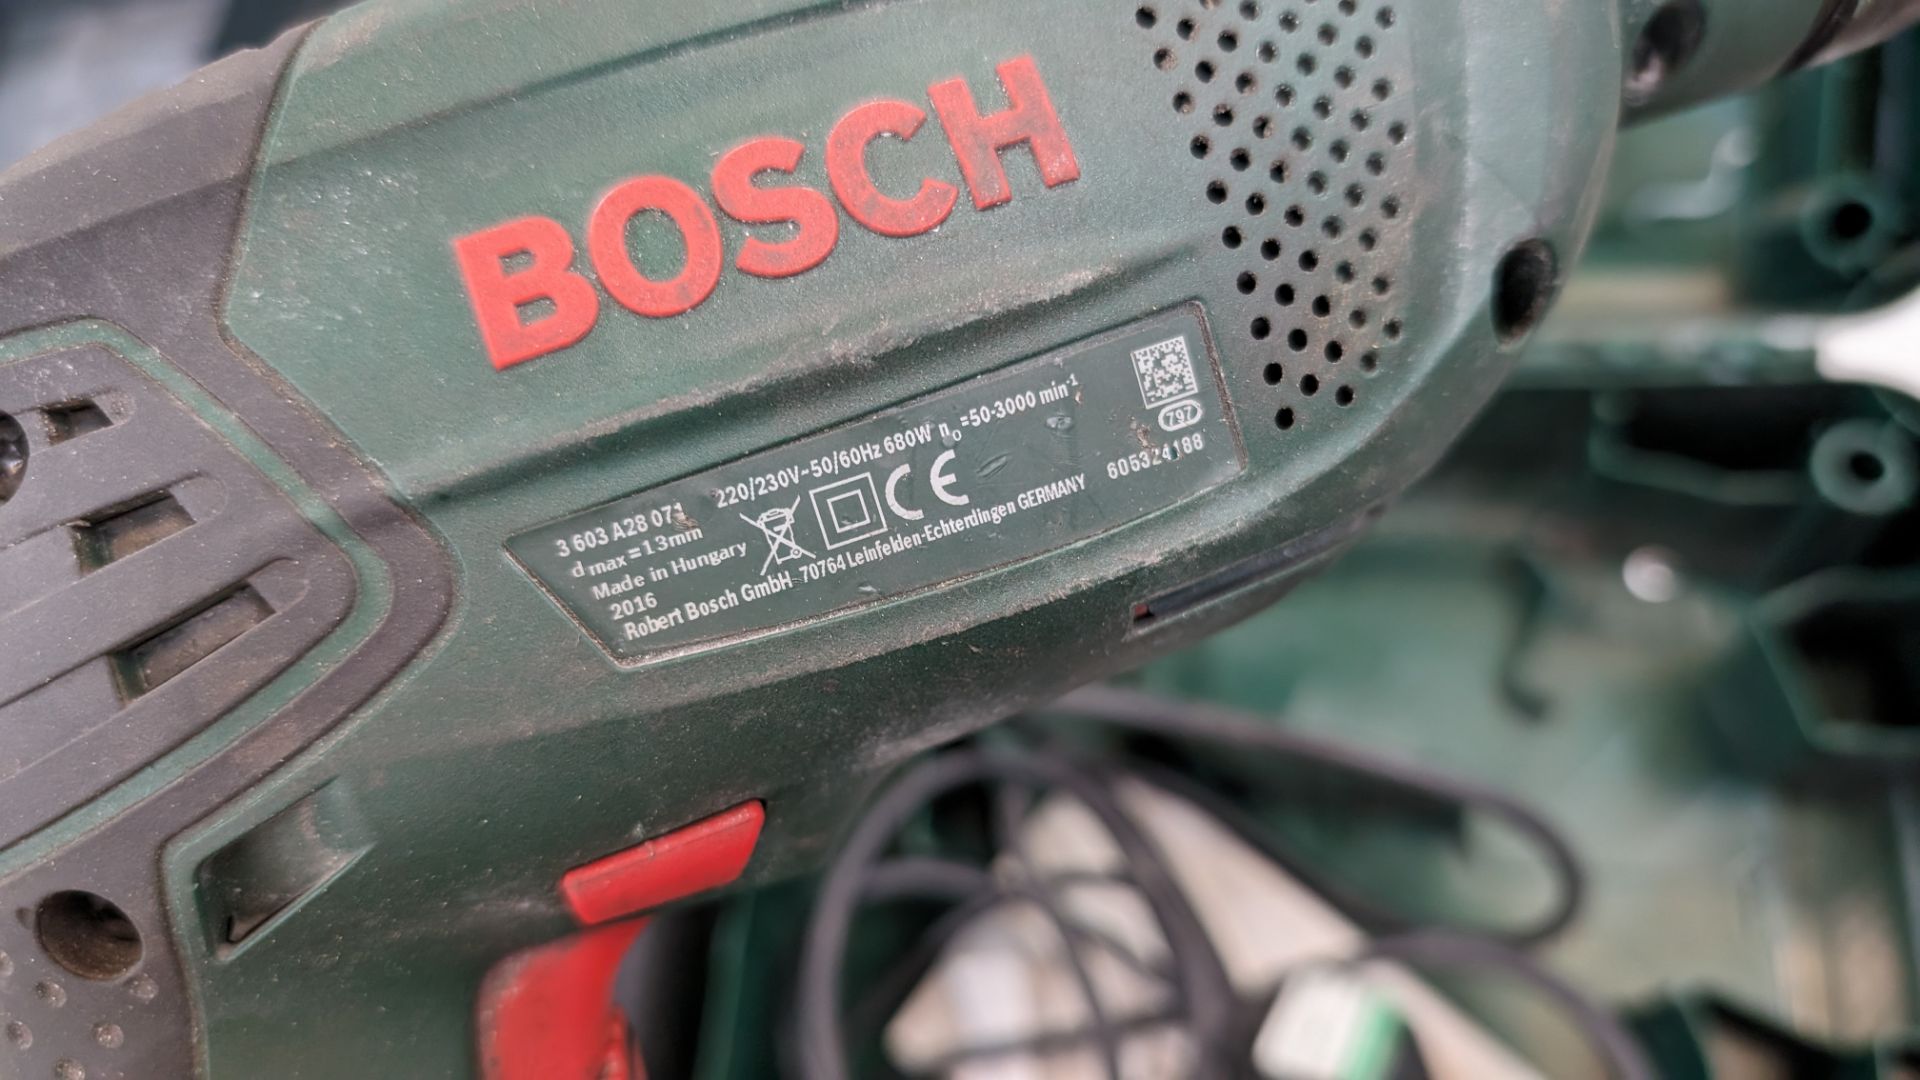 Bosch PSB680RE drill in case - Bild 4 aus 5